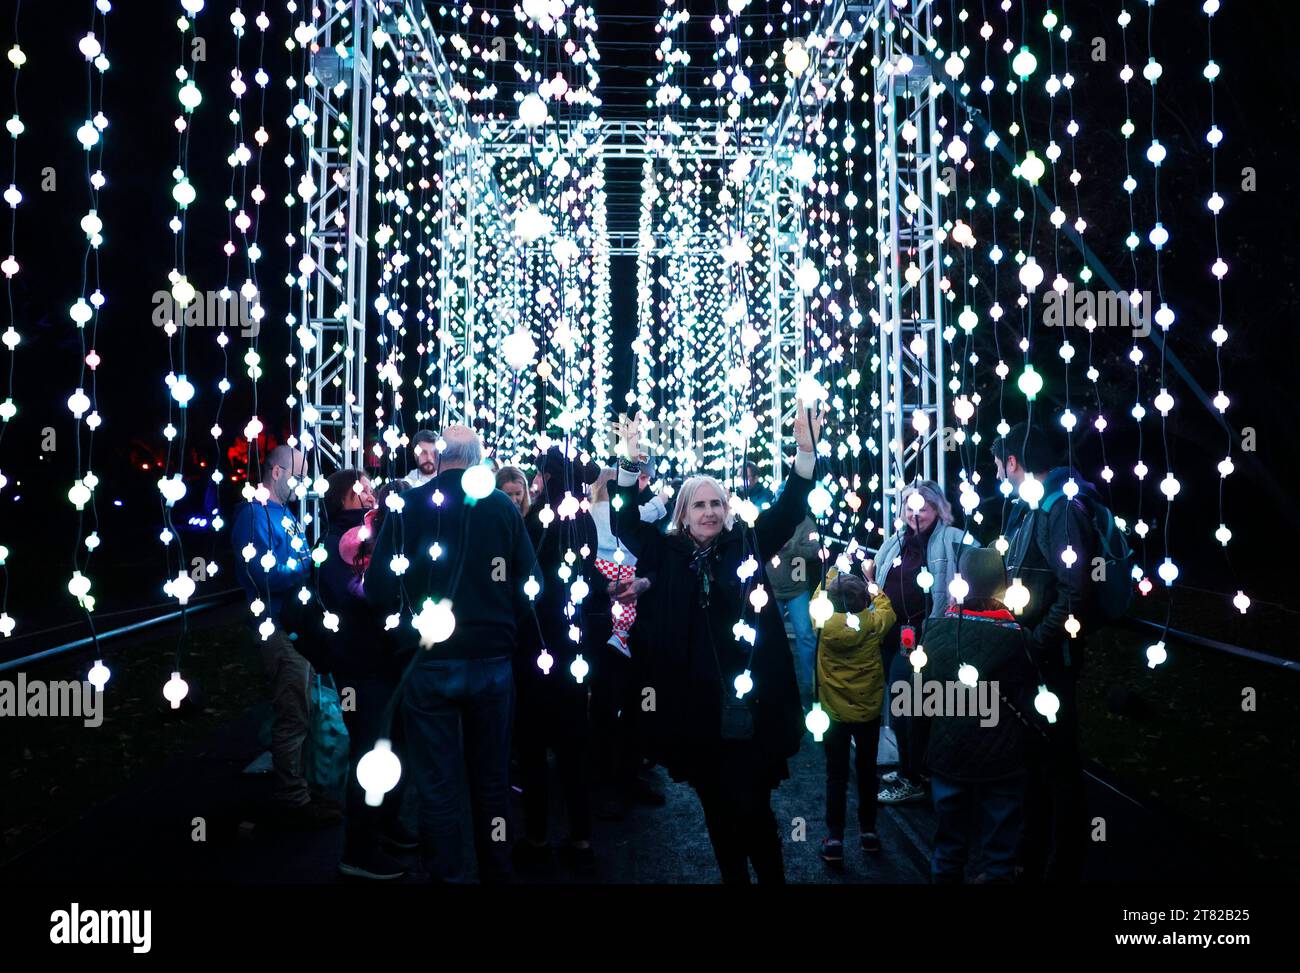 Am Freitag, den 17. November 2023 in New York City, besuchen die Besucher die Lichterinstallationen der Weihnachtsbeleuchtung am Lightscape, einem beleuchteten Wanderweg, der die Schönheit des Winters feiert. Jetzt, im dritten Jahr, bietet Lightscape einen ausgedehnten und neu gestalteten Weg, der auf der natürlichen Schönheit der BBG-Landschaften, Bäume, Wasserspiele und architektonischen Details aufbaut und Besucher auf eine abendliche Reise durch 18 Installationen internationaler Lichtkünstler und Designkollektive entführt. Foto: John Angelillo/UPI Stockfoto